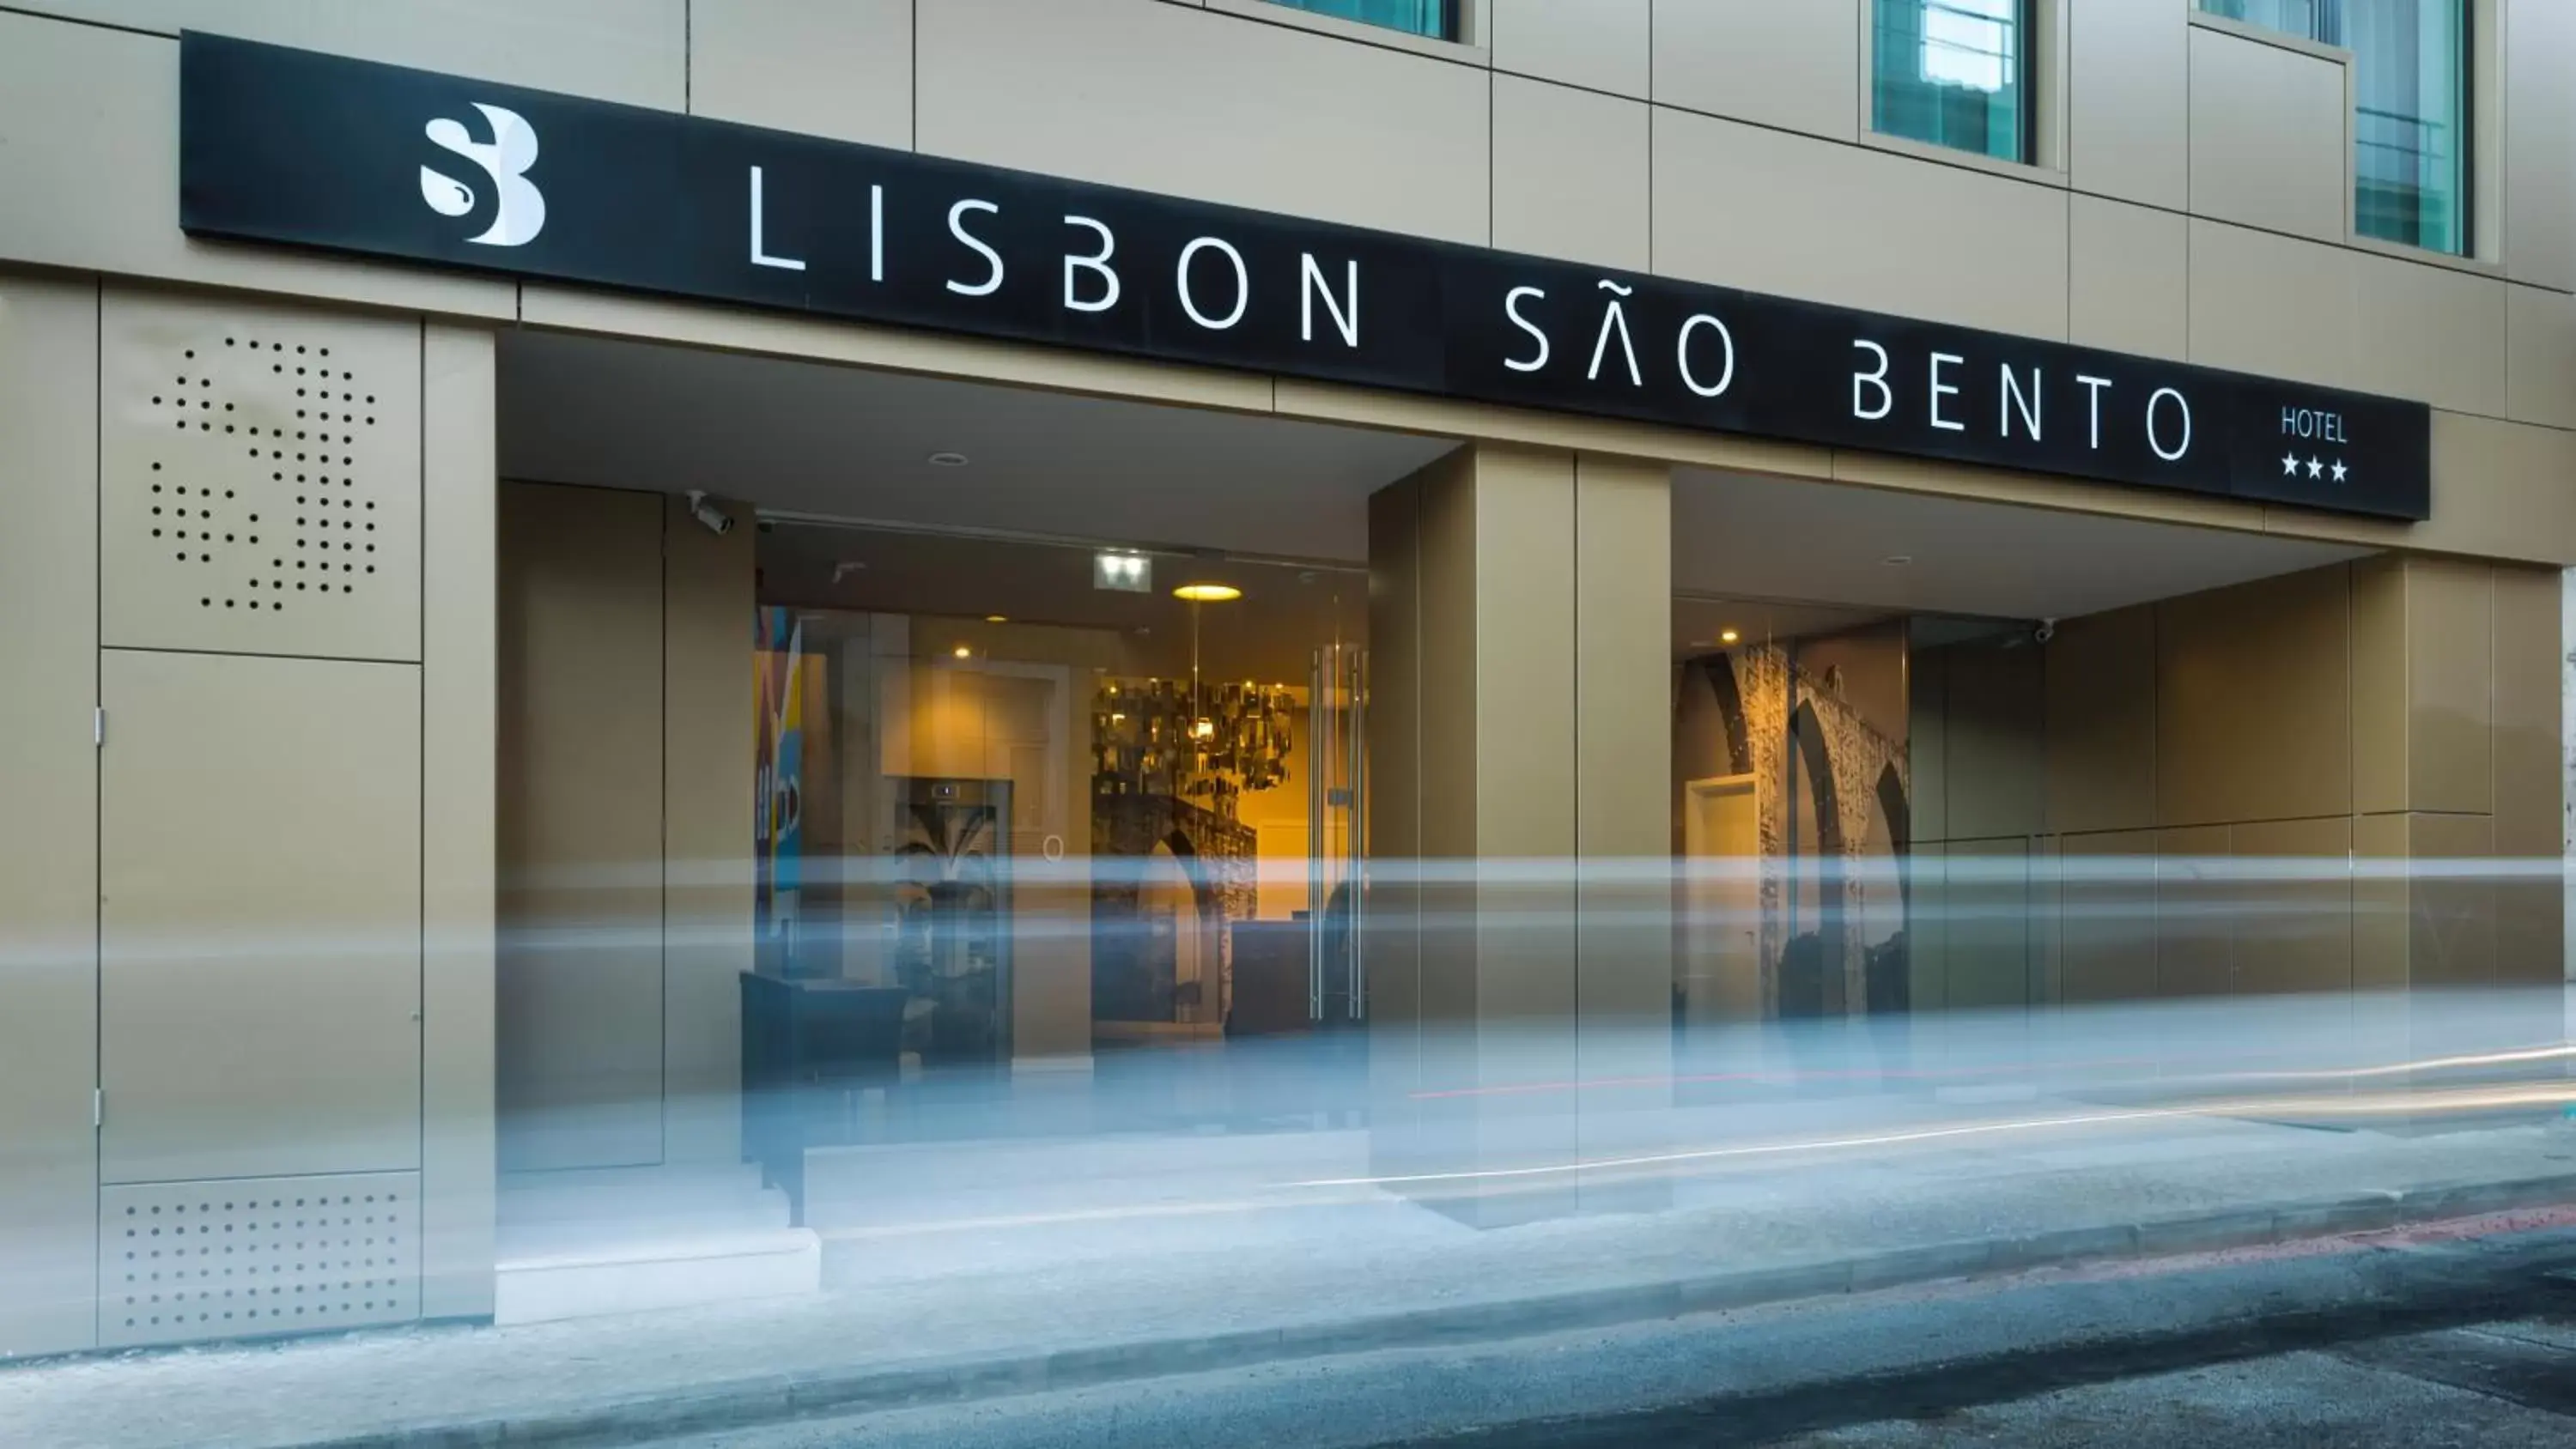 Facade/Entrance in Lisbon Sao Bento Hotel